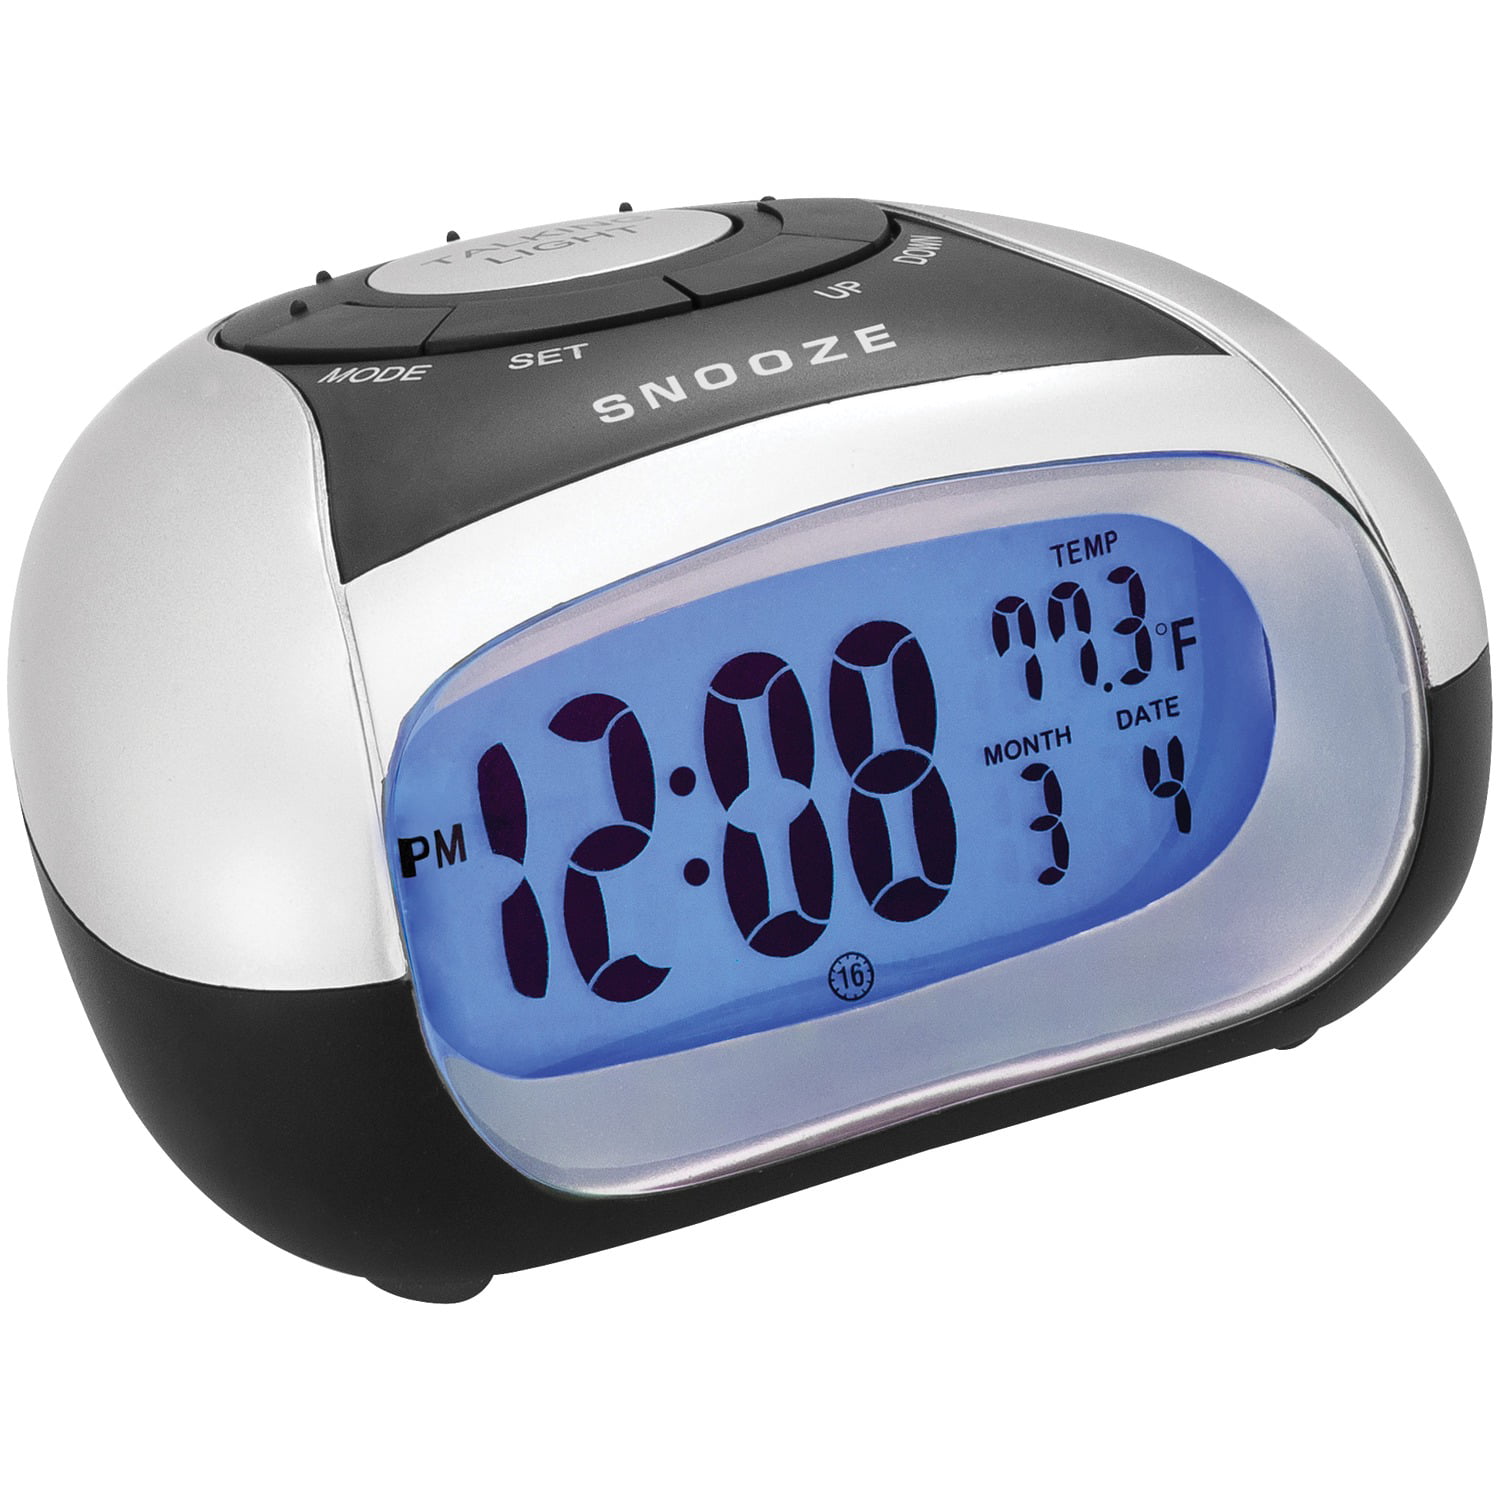 Хорошие говорящие часы. Говорящие часы будильник. Digital Alarm Clock. Talking Temp Clock будильник. Часы будильник говорящие Snooze.